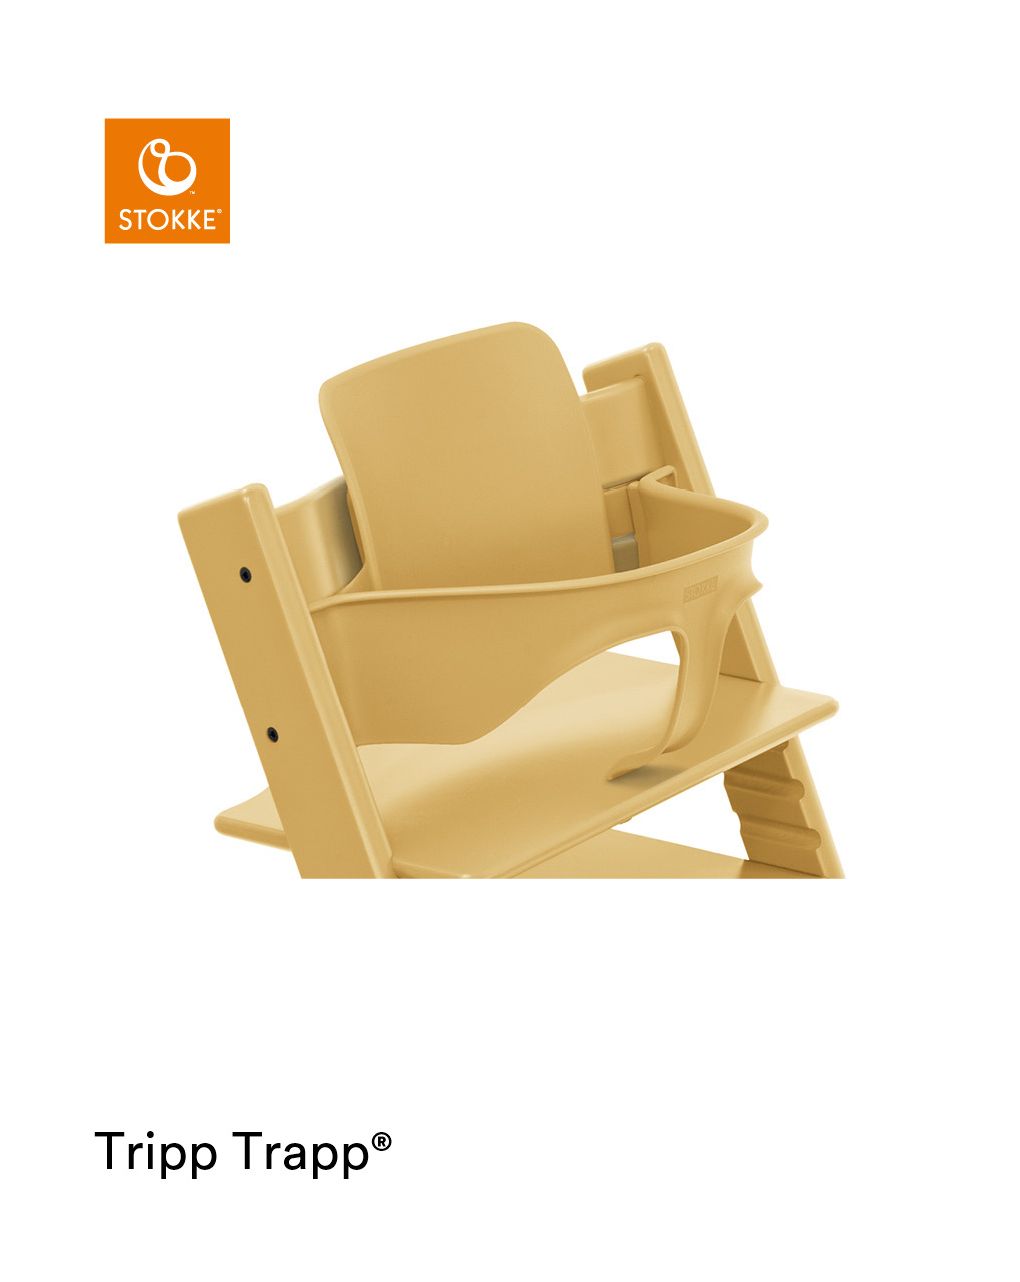 Tripp trapp® baby set
trasforma la tua sedia tripp trapp® in un comodo seggiolone - Stokke